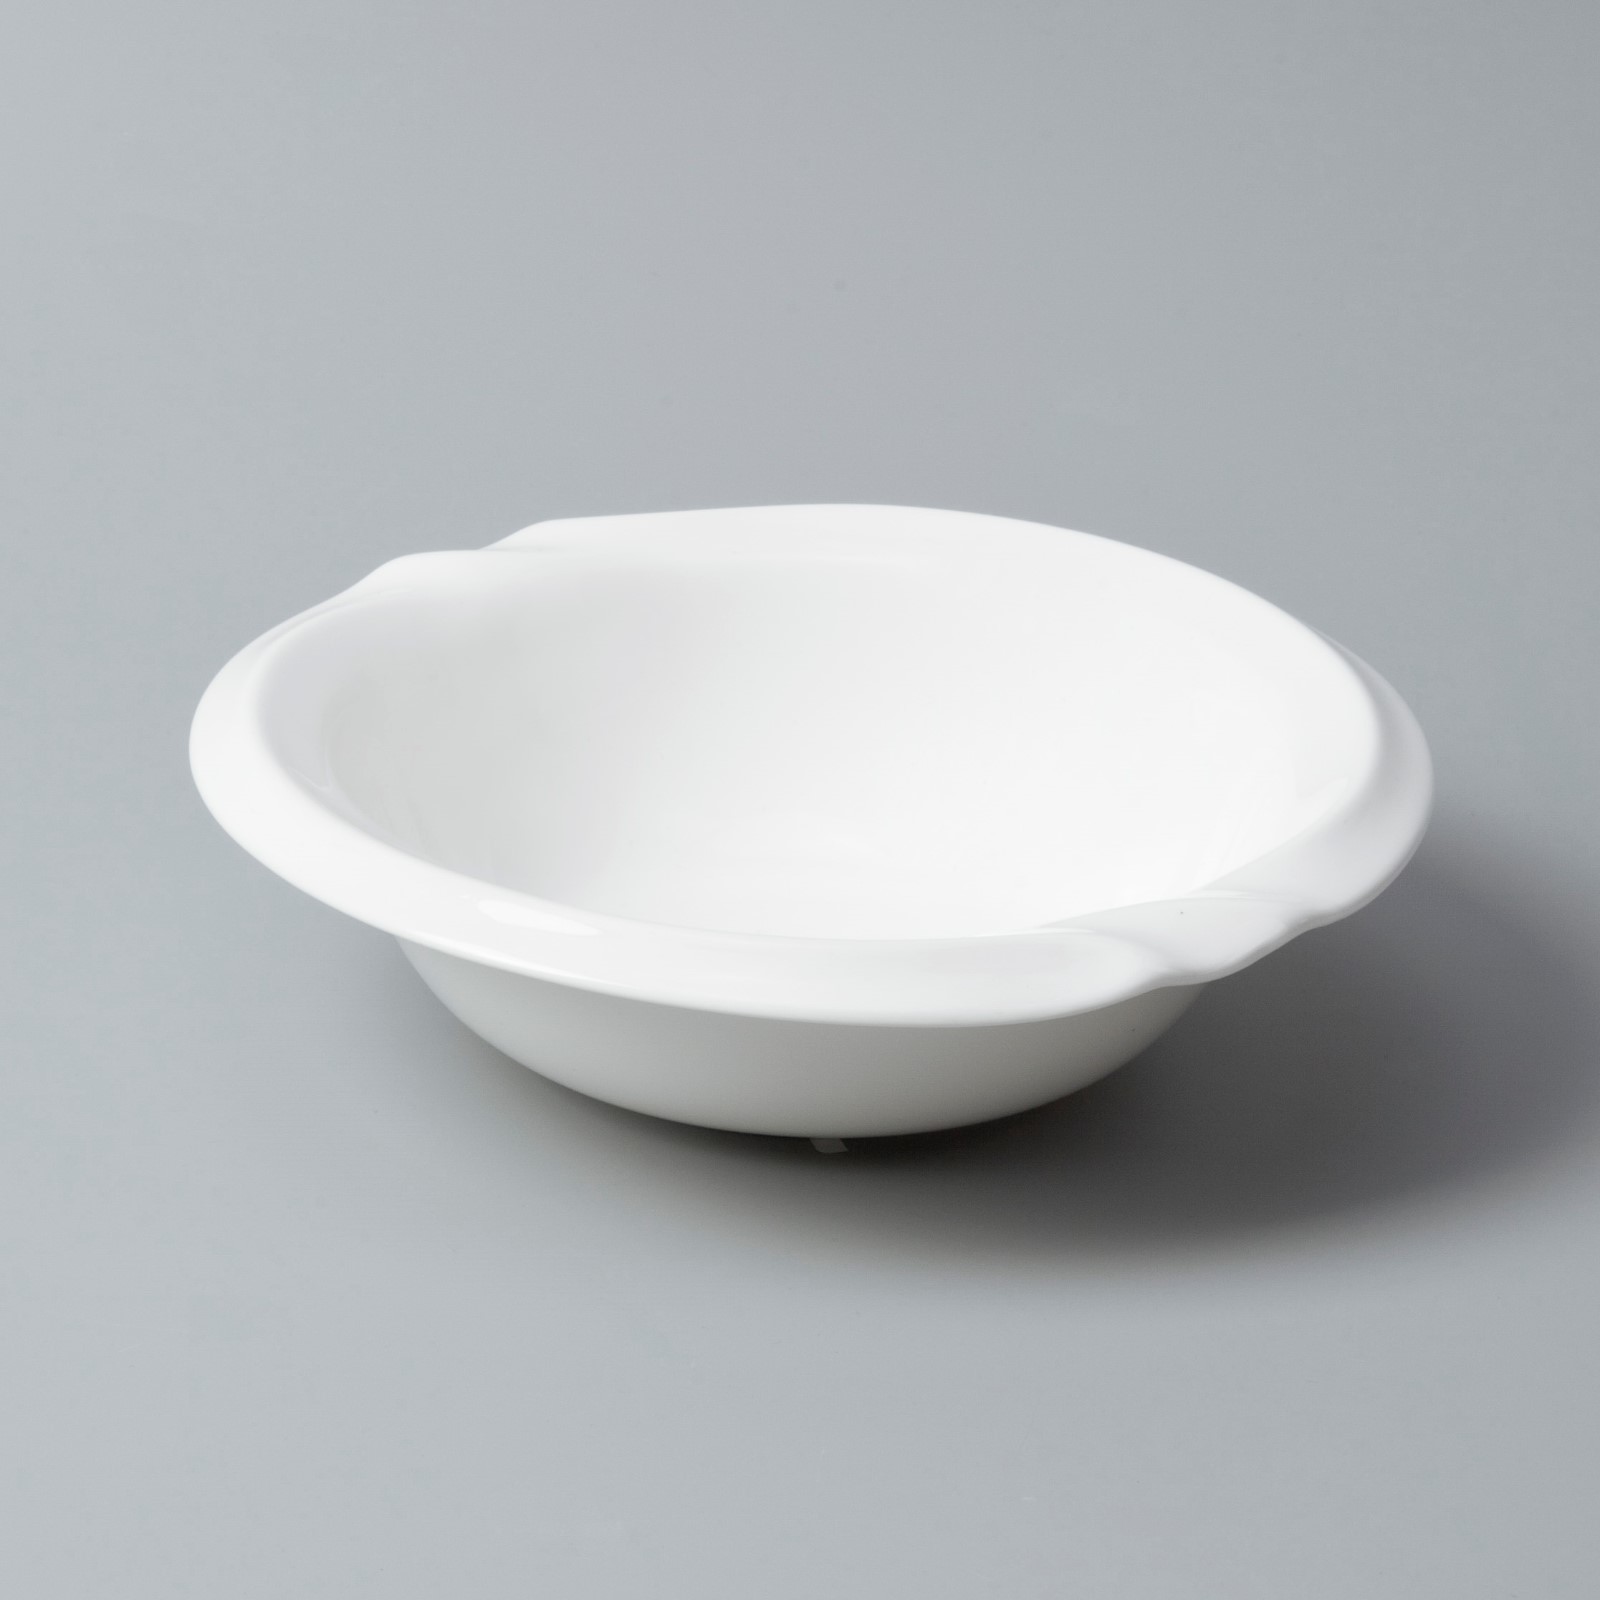 Custom white dinnerware sets for 8 factory for home